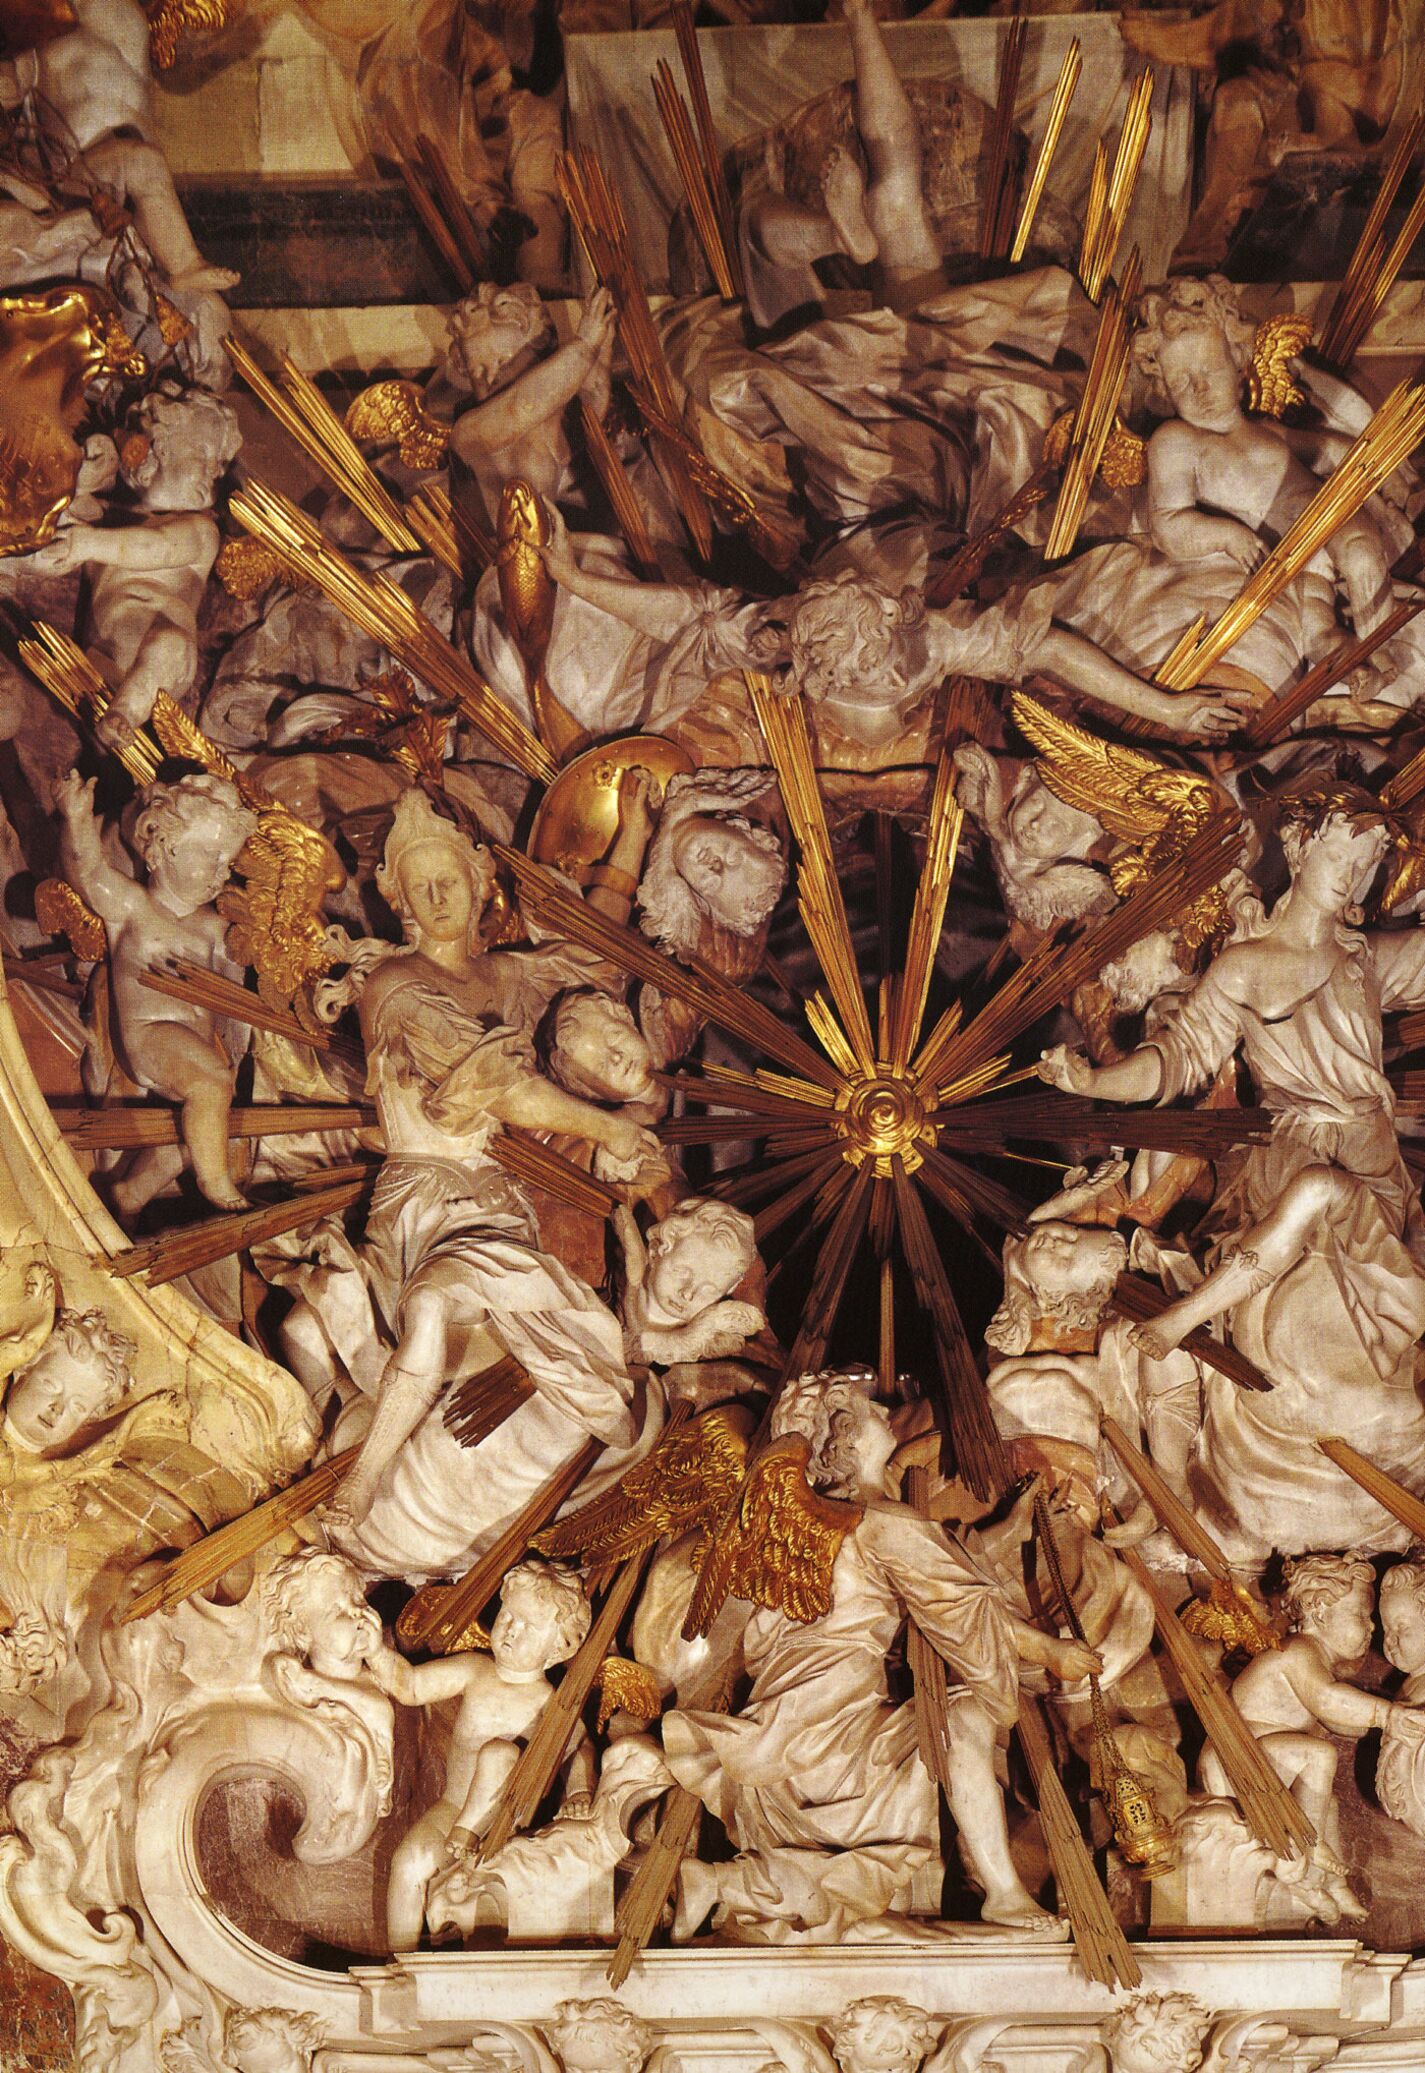 Obra de Narciso Tomé, 1721. Catedral de Toledo, España.